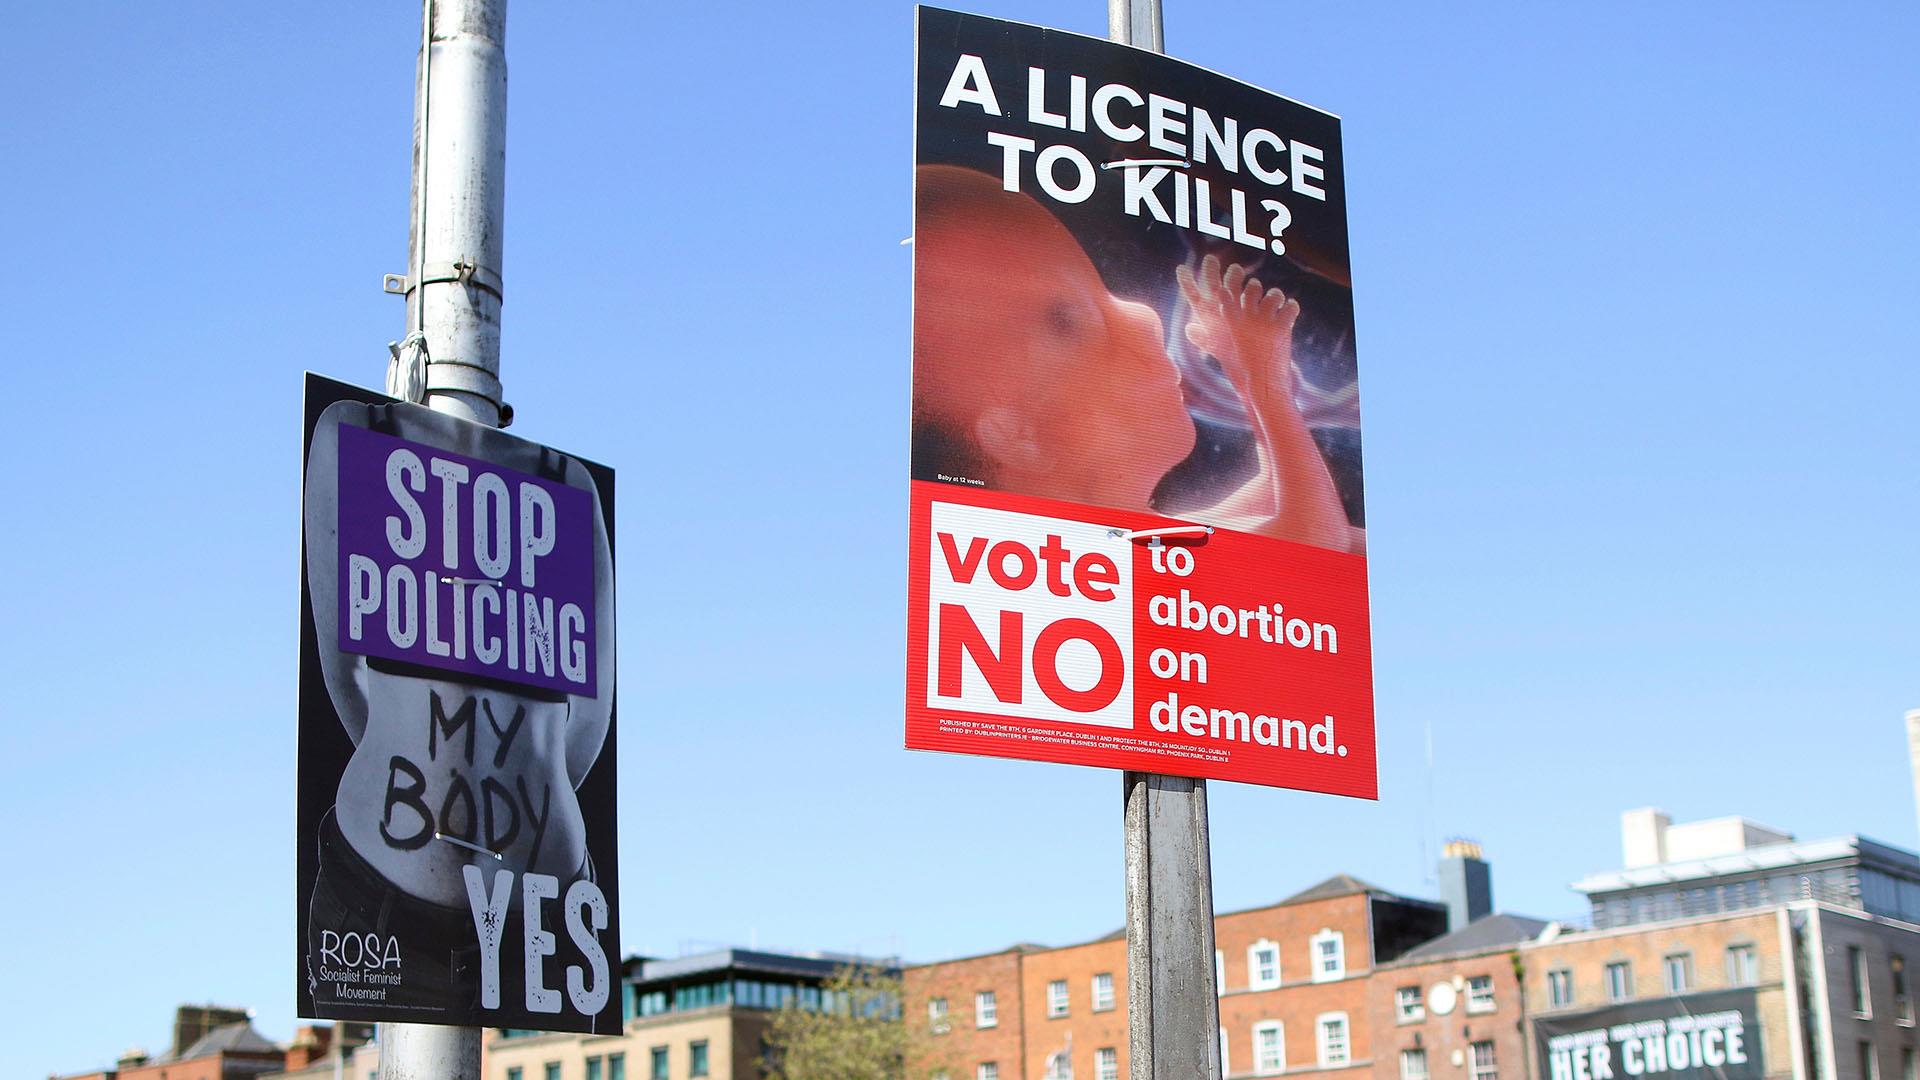 Î‘Ï€Î¿Ï„Î­Î»ÎµÏƒÎ¼Î± ÎµÎ¹ÎºÏŒÎ½Î±Ï‚ Î³Î¹Î± ireland abortion referendum